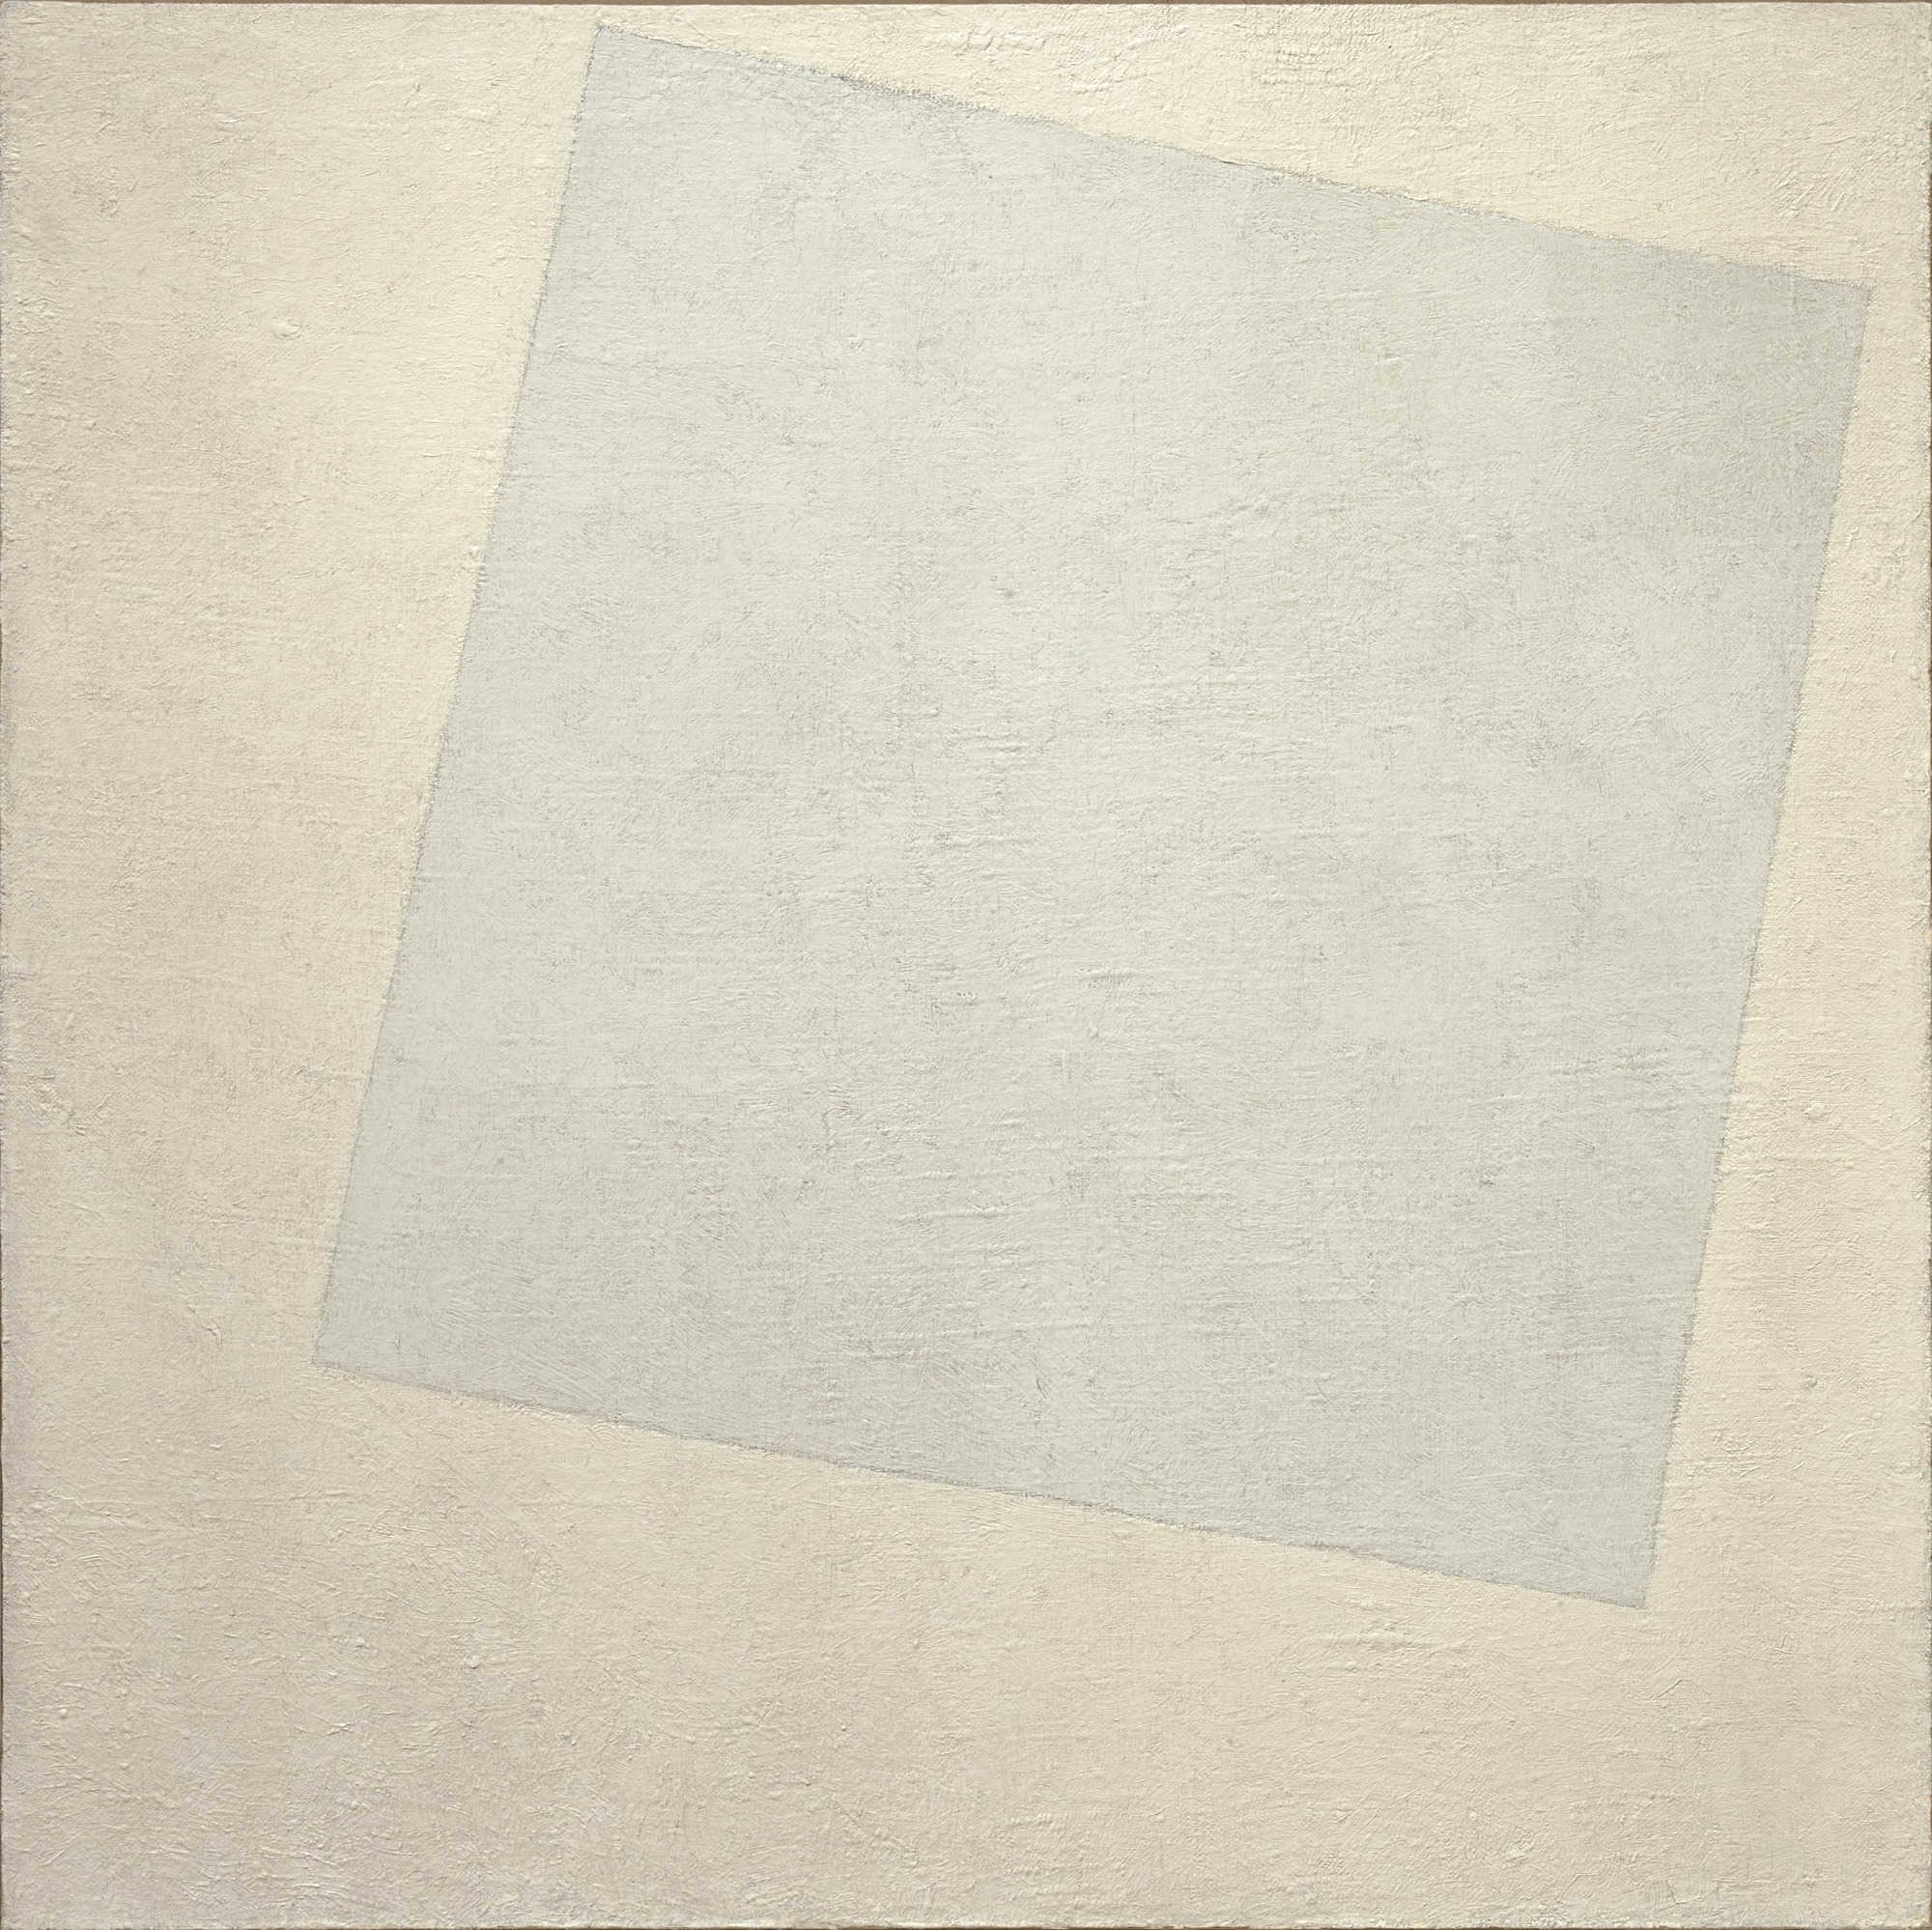 Kasimir_Malewitsch, Suprematistische Komposition: Weiß auf Weiß (1918)